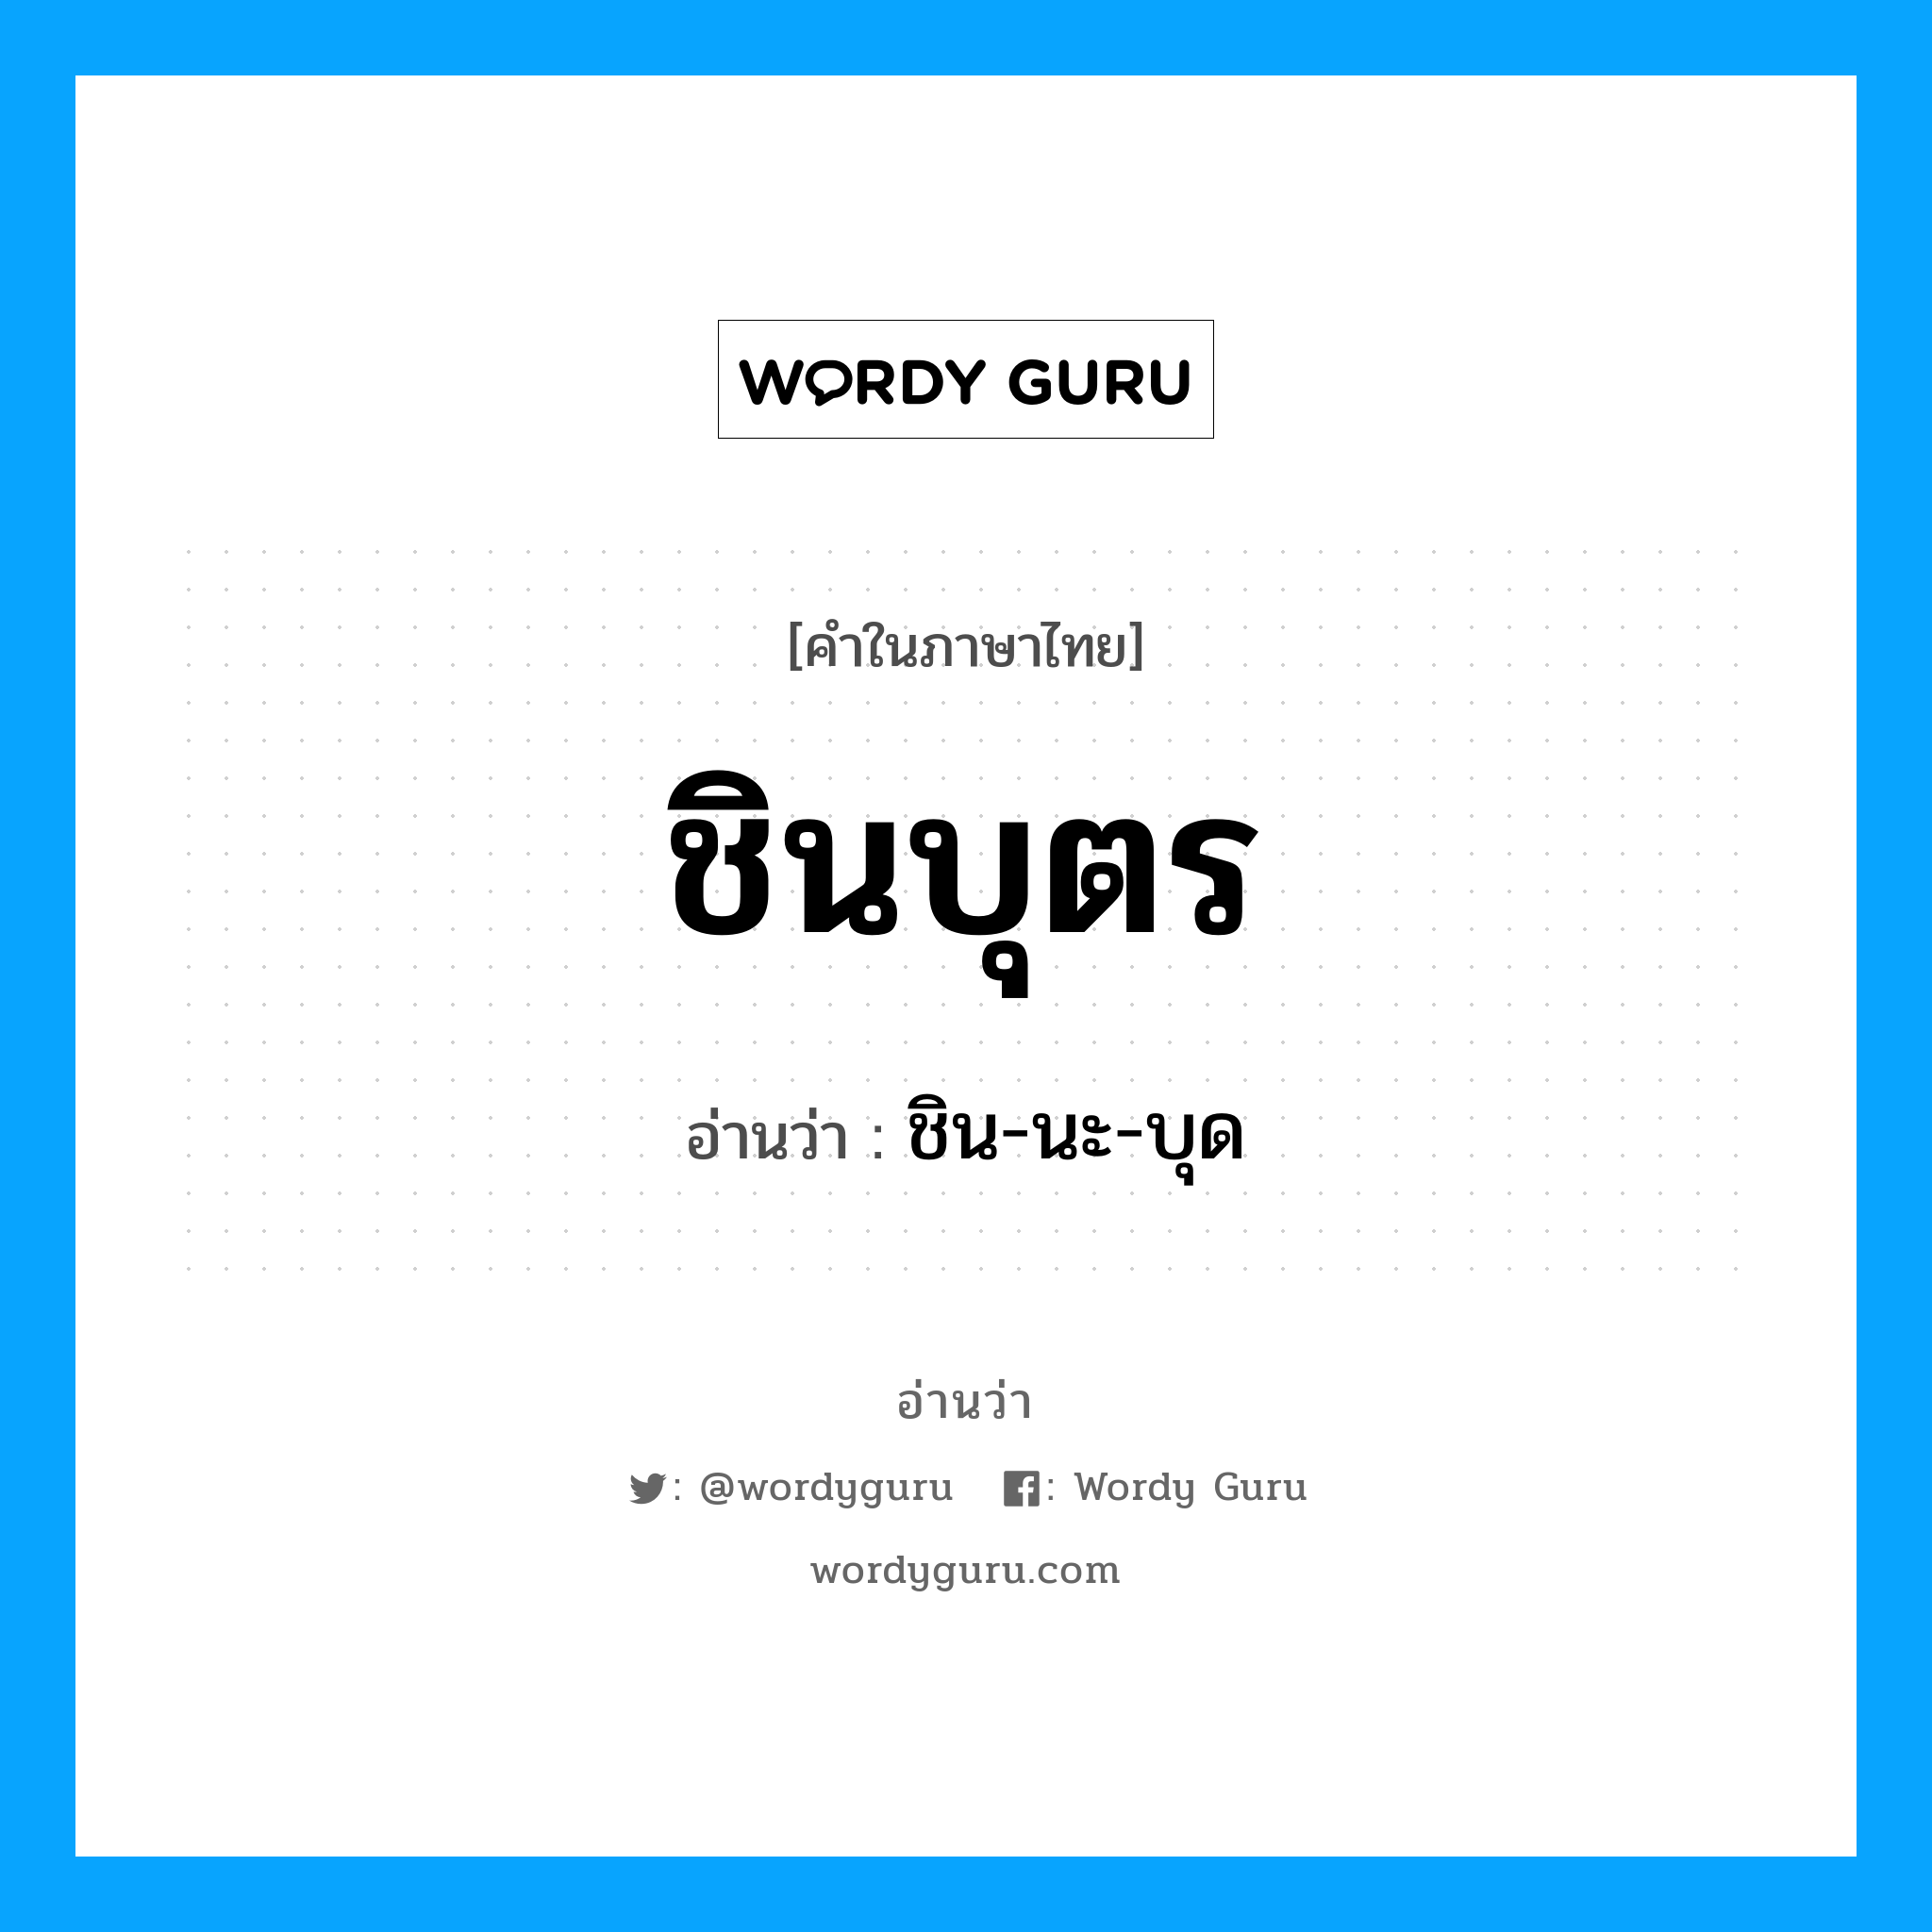 ชิน-นะ-บุด เป็นคำอ่านของคำไหน?, คำในภาษาไทย ชิน-นะ-บุด อ่านว่า ชินบุตร